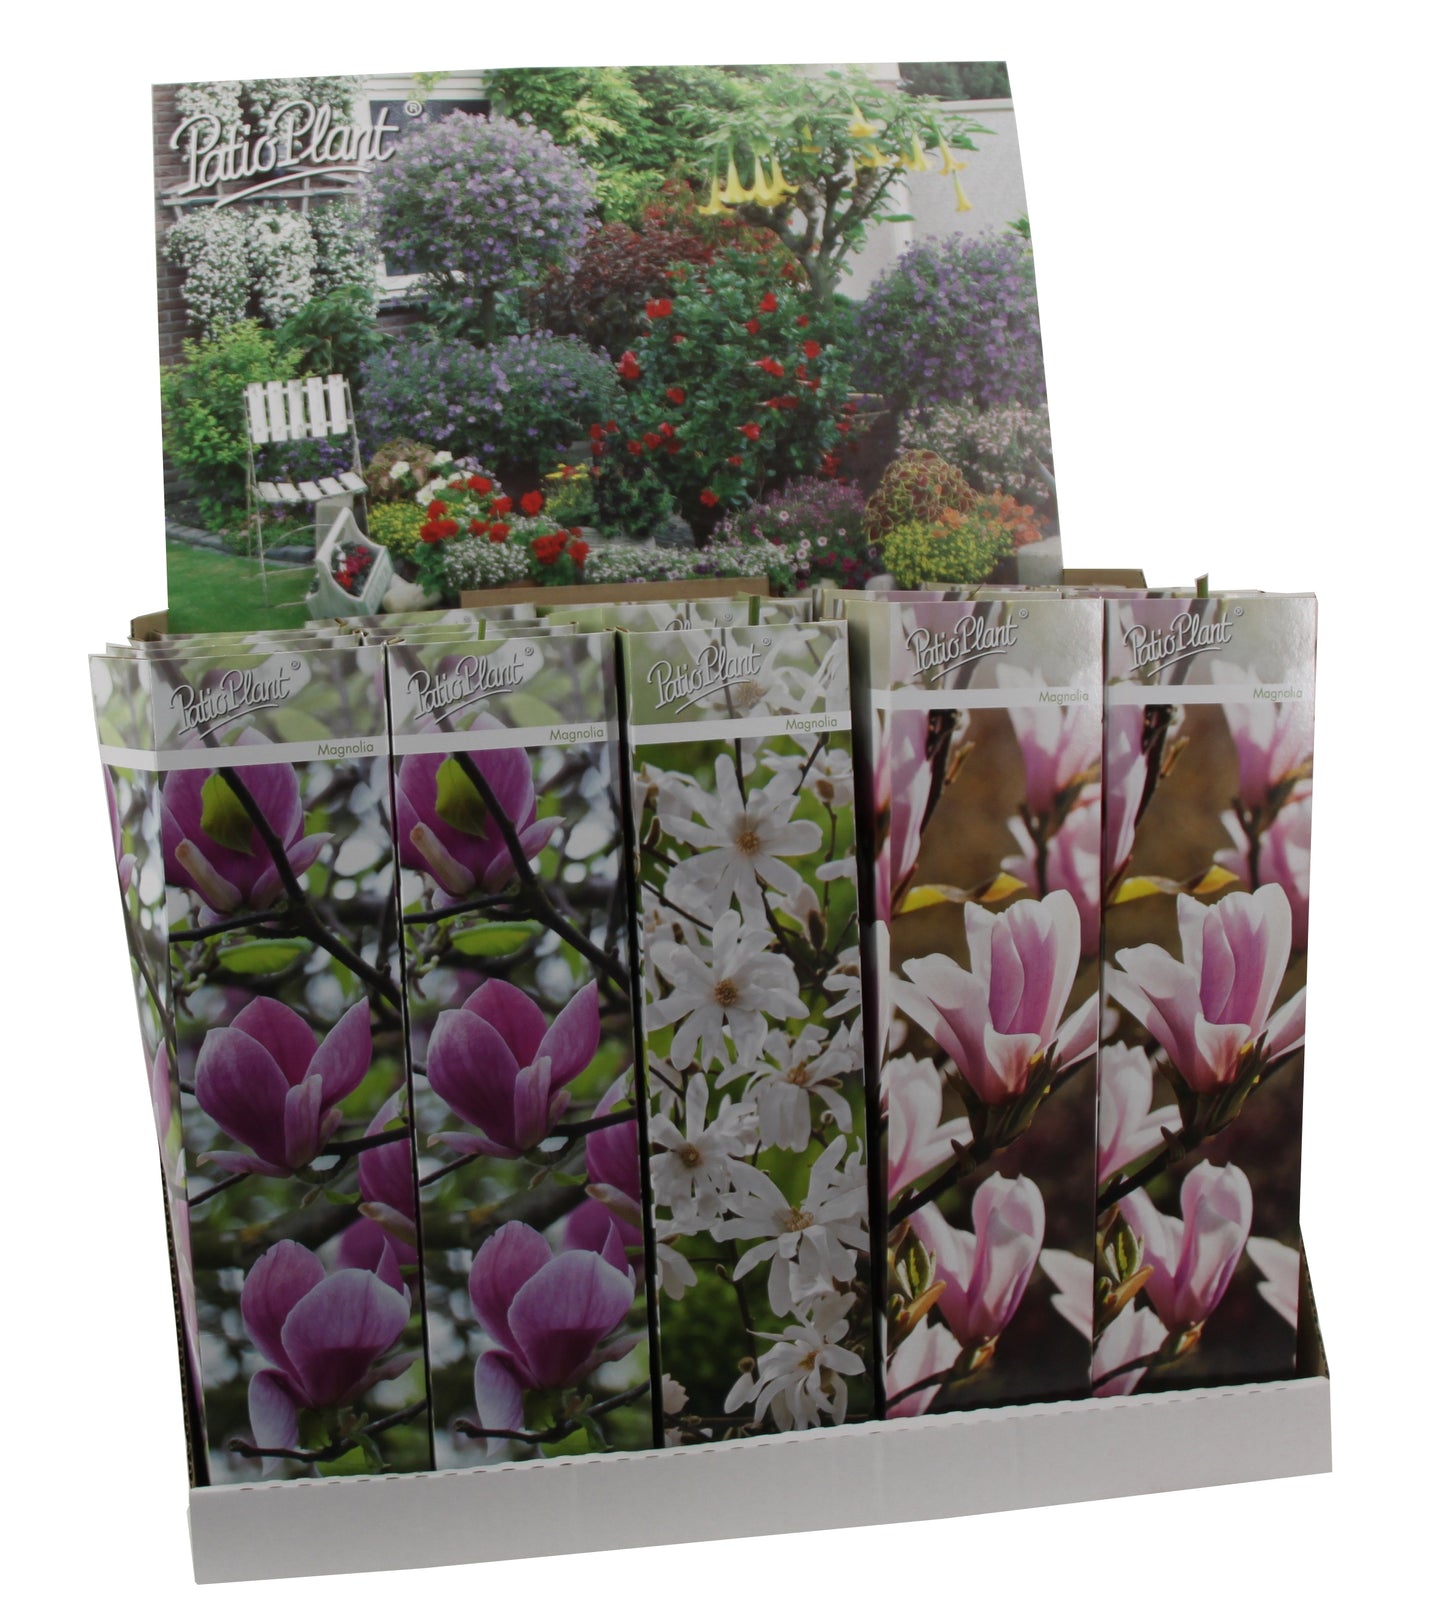 3 x Magnolien 30-40 cm 'Soulangeana', 'Susan' und 'Stellata' -Gartenpflanzen - Winterhart